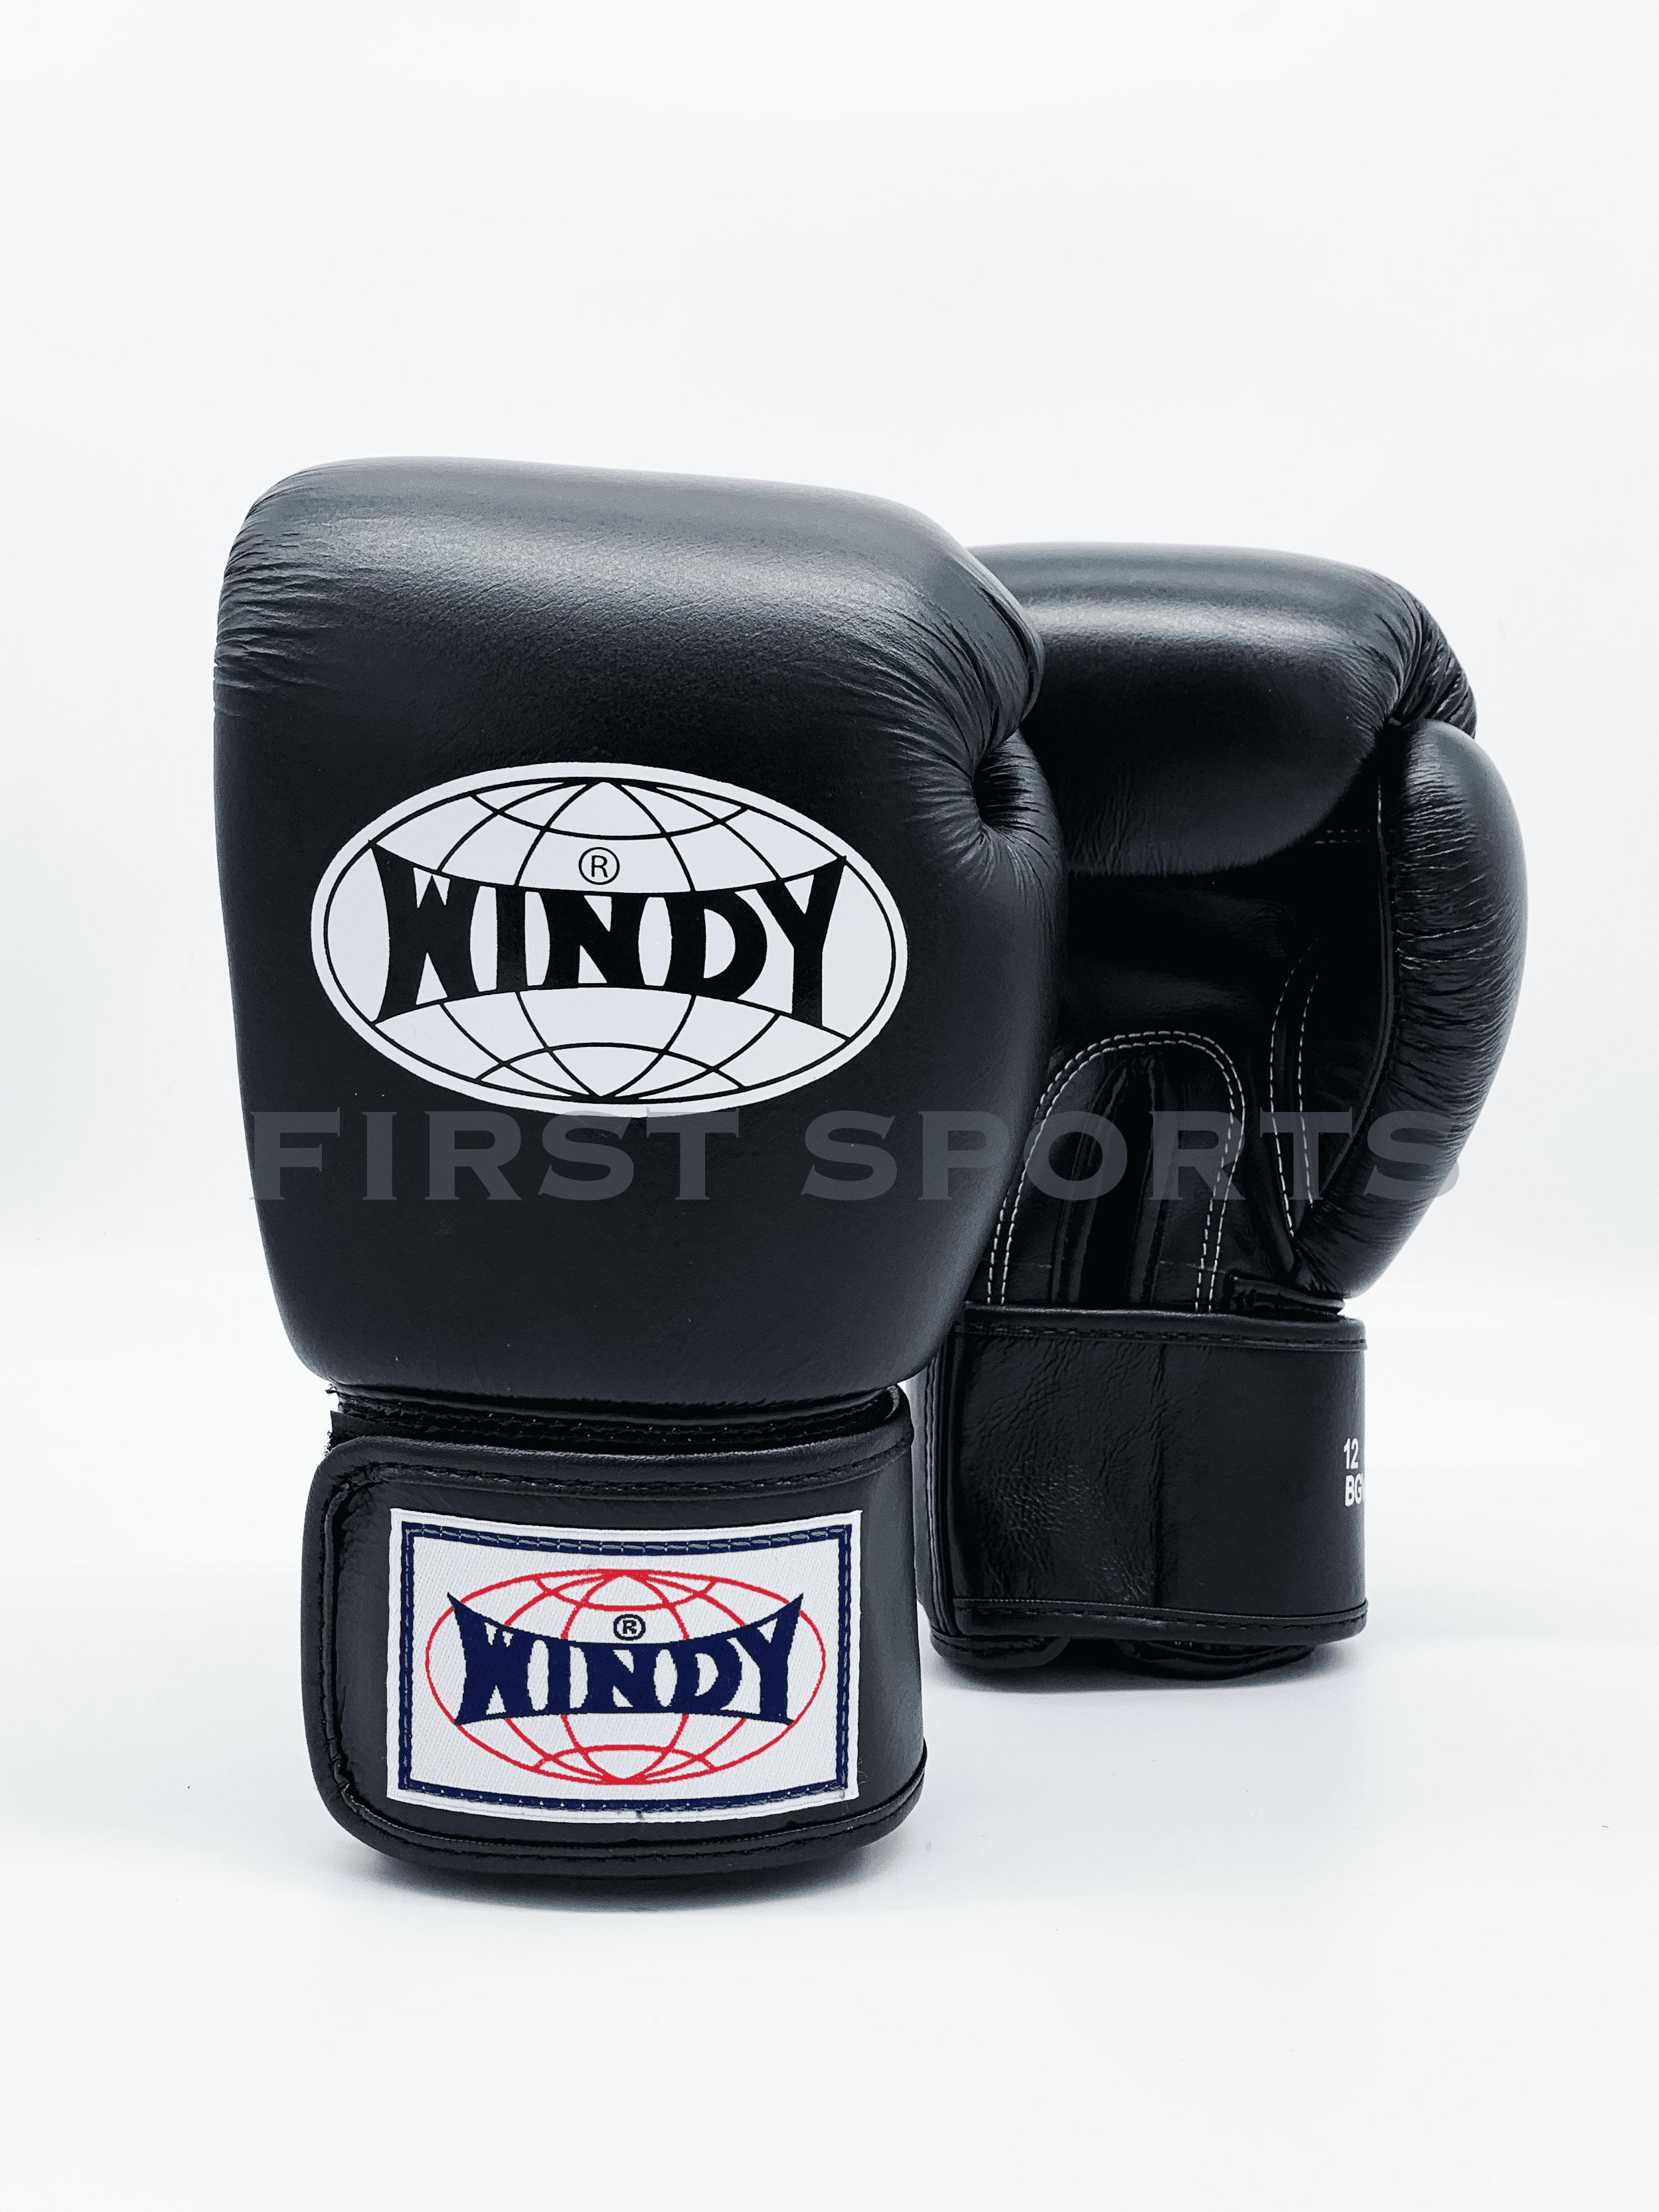 นวมวินดี้ นวมชกมวยวินดี้ นวมมวยไทยวินดี้ WINDY Boxing Gloves BGVH 10 Colors นวมมวยไทยวินดี้ 10สี